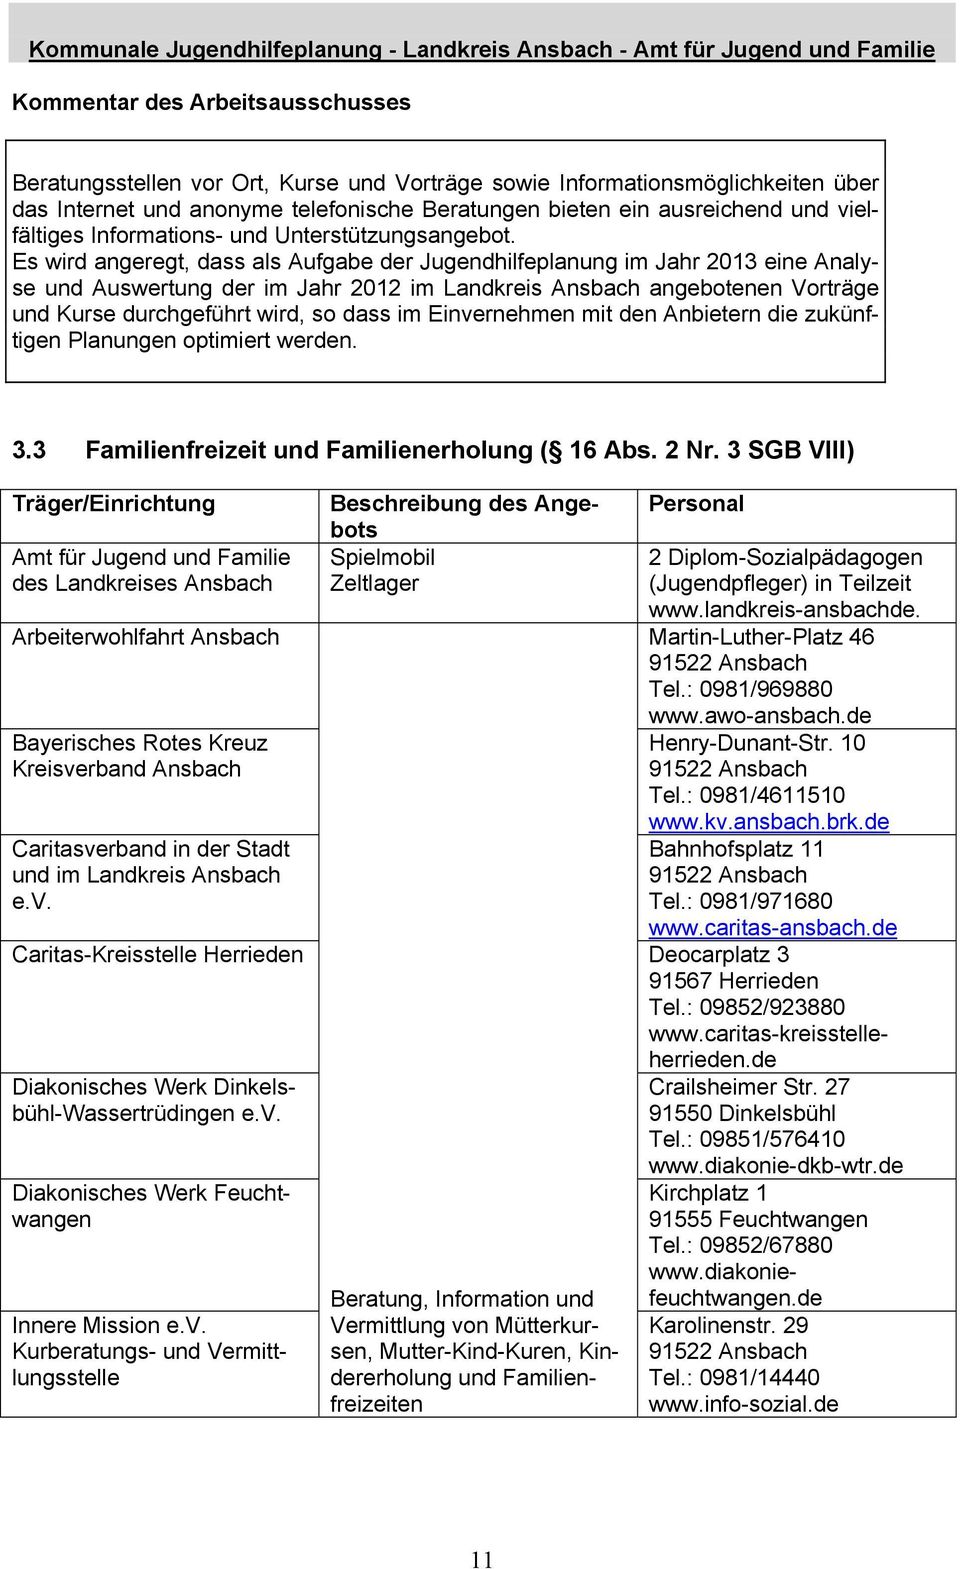 Es wird angeregt, dass als Aufgabe der Jugendhilfeplanung im Jahr 2013 eine Analyse und Auswertung der im Jahr 2012 im Landkreis Ansbach angebotenen Vorträge und Kurse durchgeführt wird, so dass im